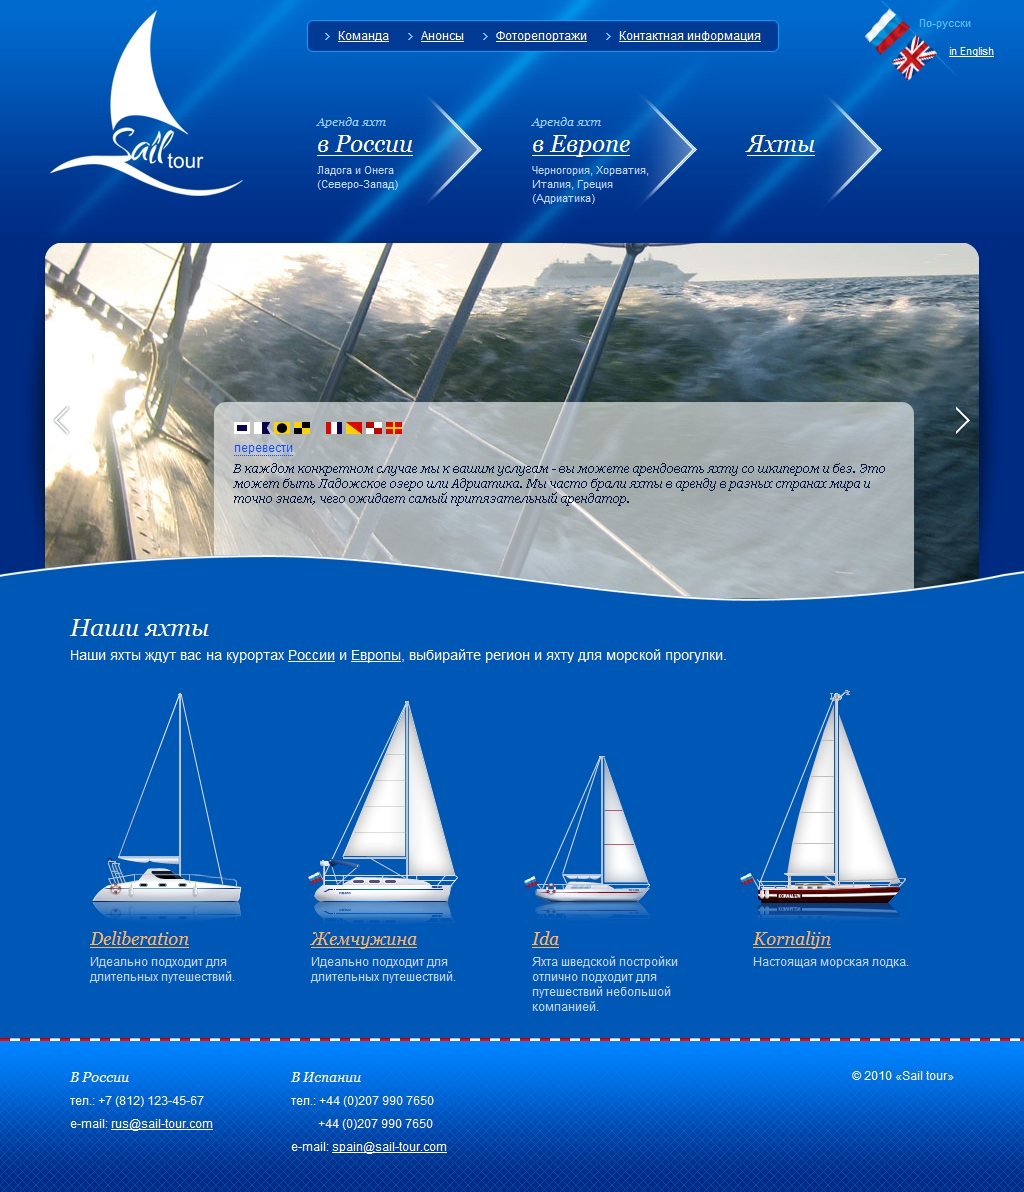 Sail tour - аренда яхт в России и Европе